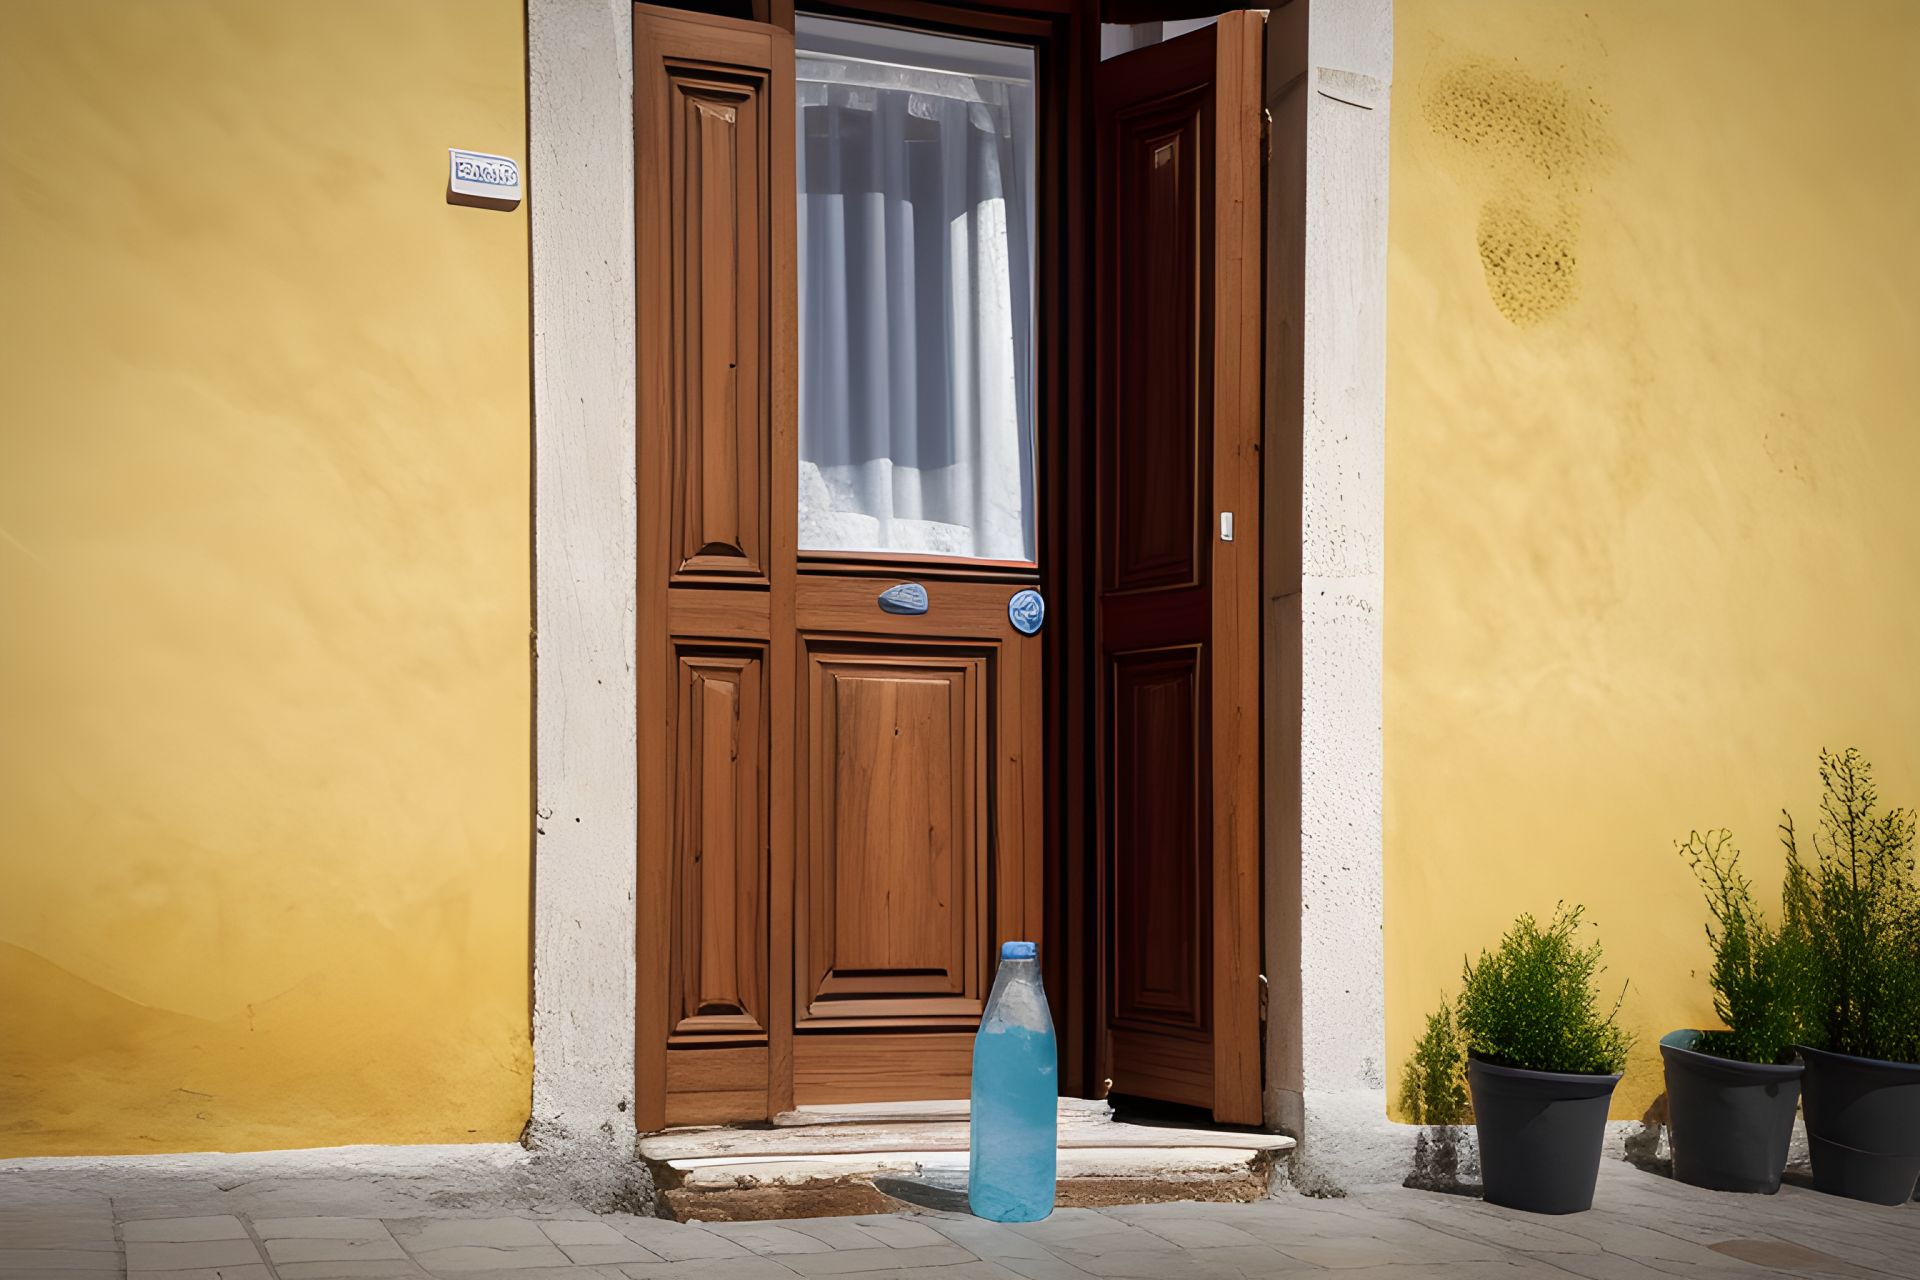 Bí ẩn đằng sau những chai nước đầy ắp trên đường phố Ý - 1